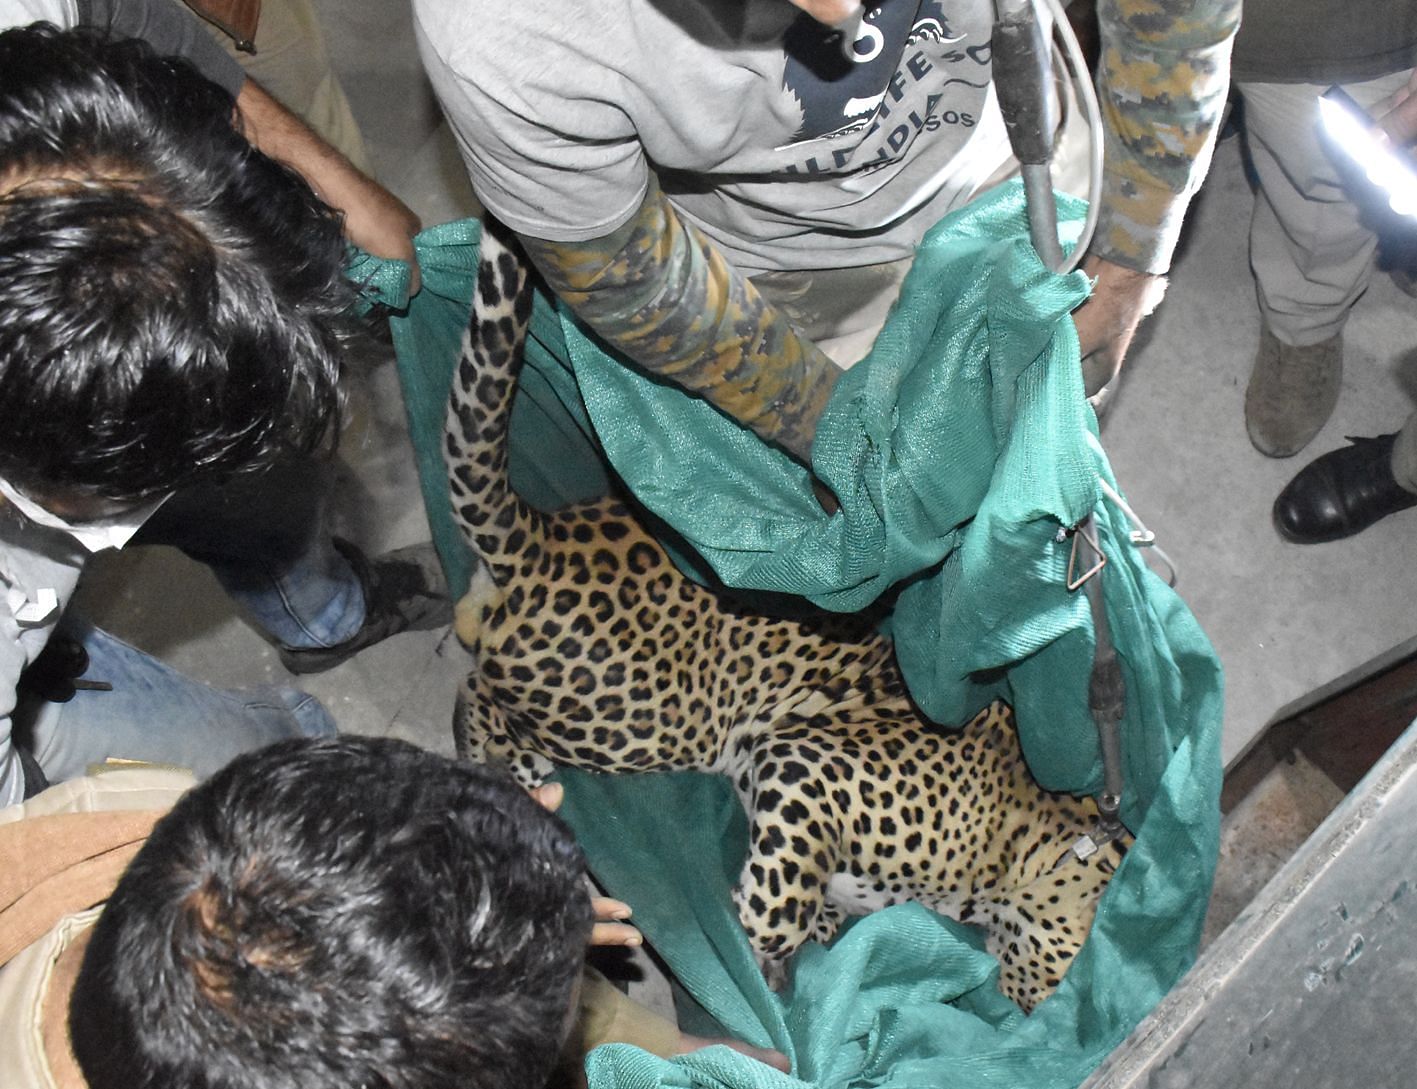   L'équipe portant le léopard après avoir été secouru